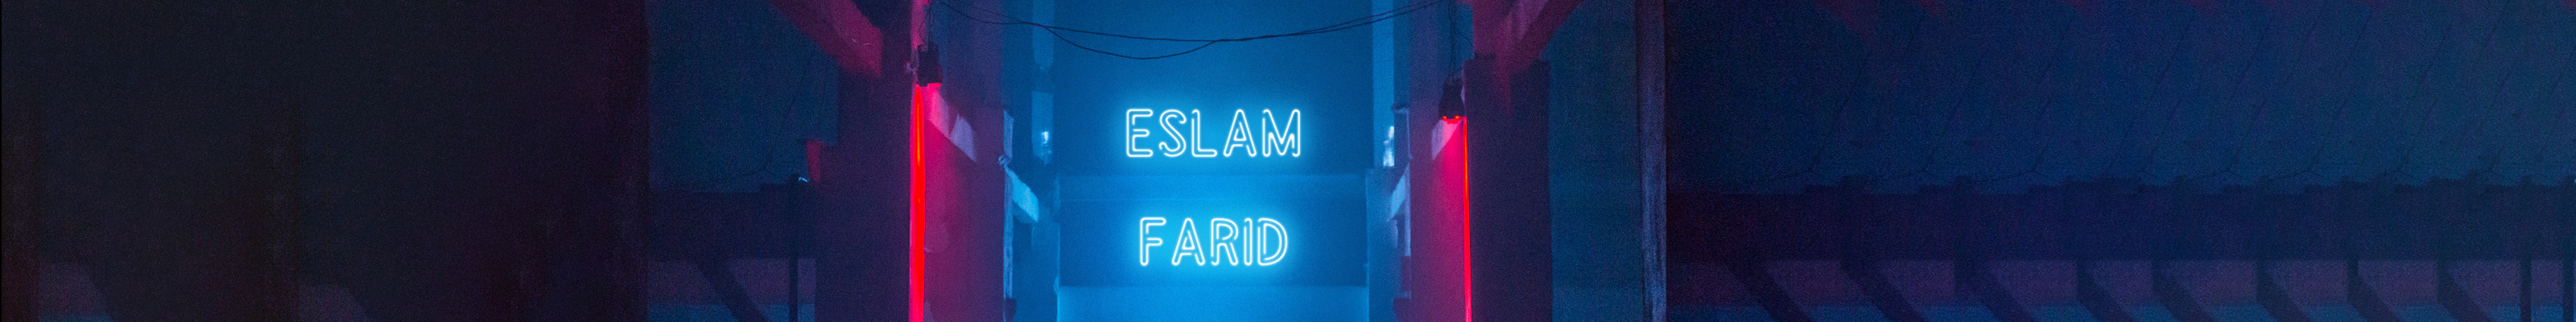 Profilbanneret til Eslam Farid